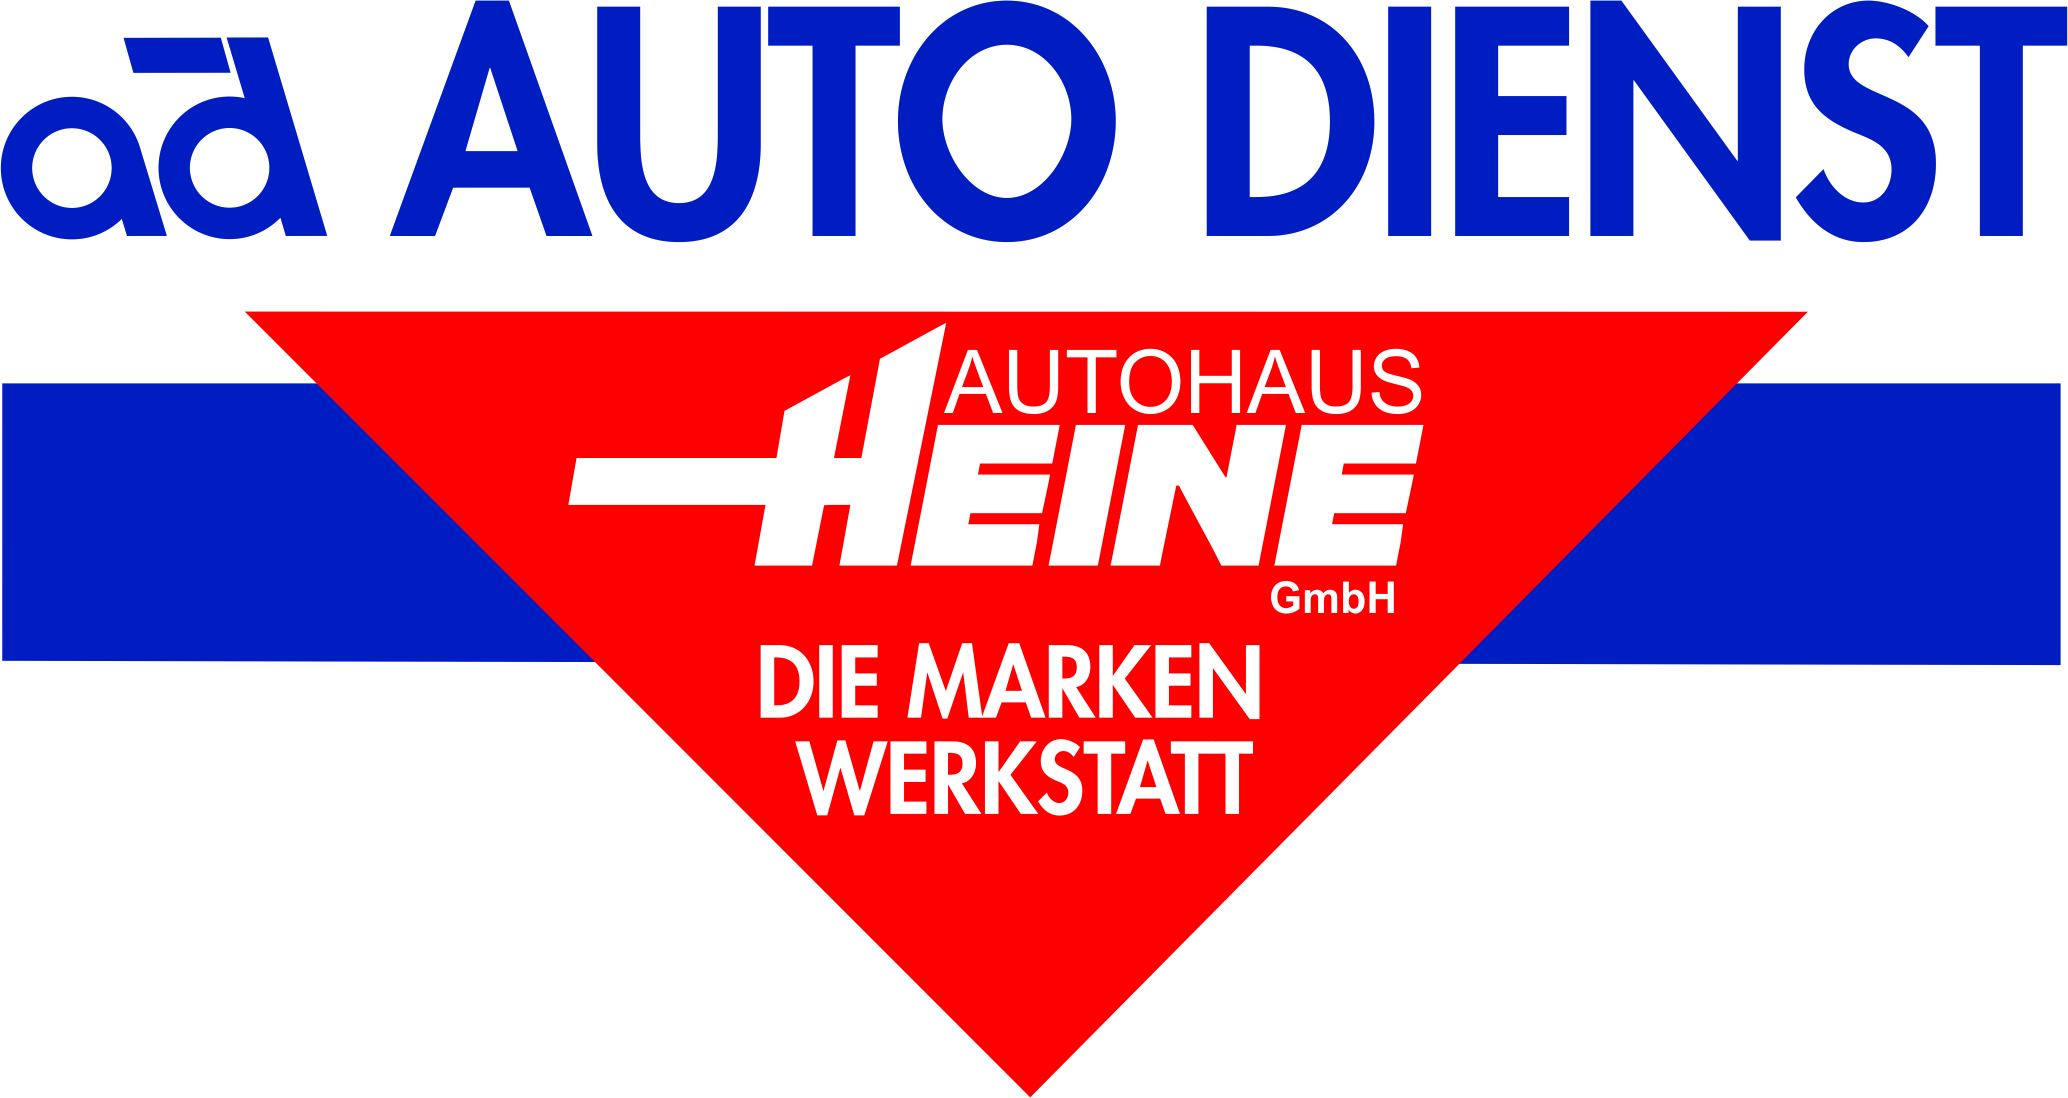 Autohaus Heine GmbH in 31535 Neustadt am Rübenberge-Hagen